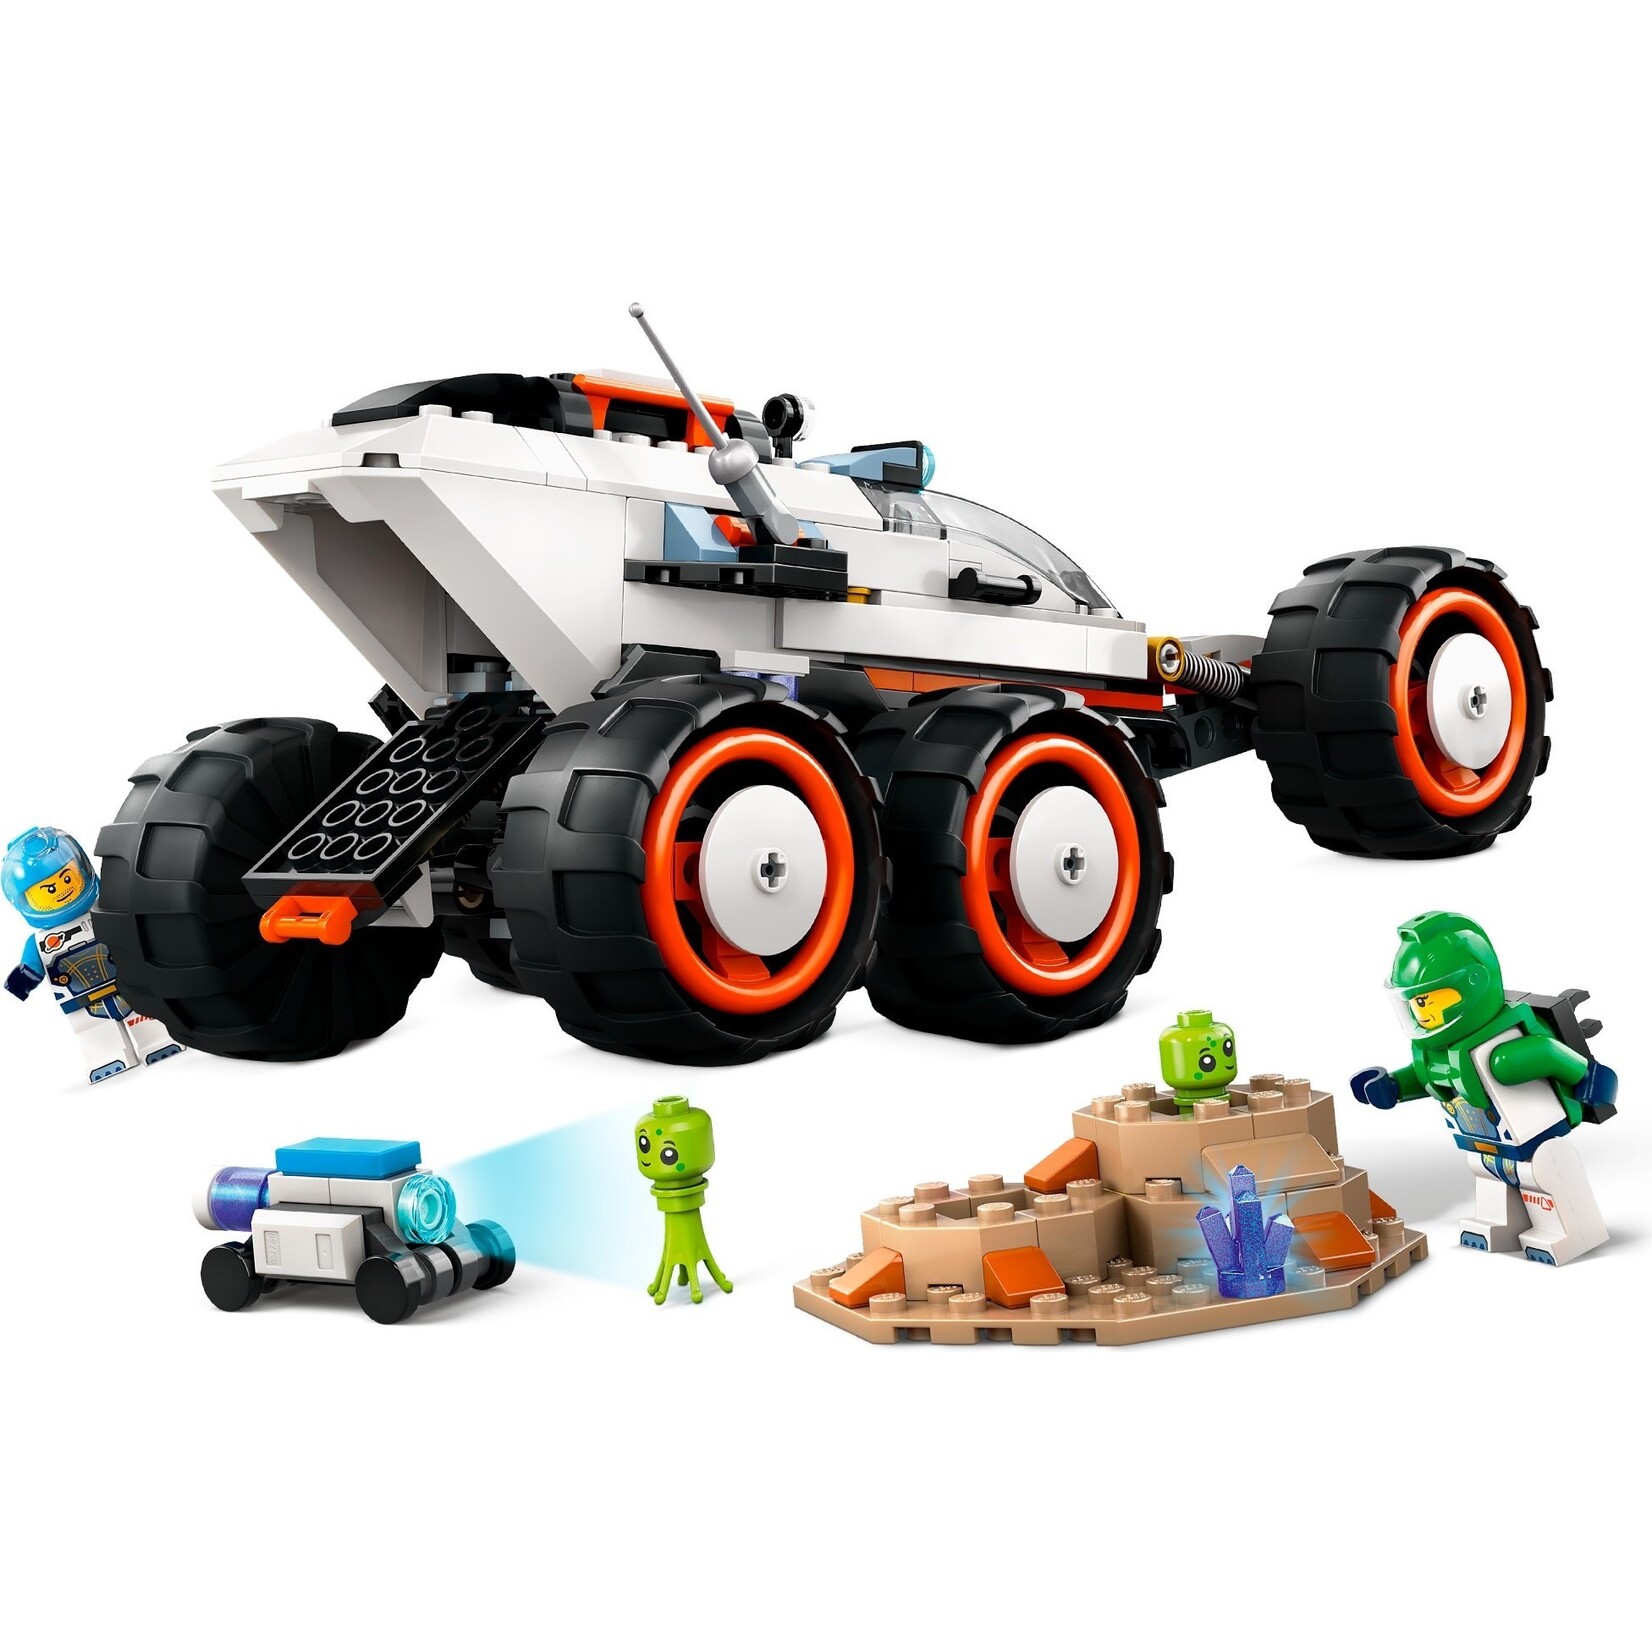 LEGO Ruimteverkenner en buitenaards leven - 60431